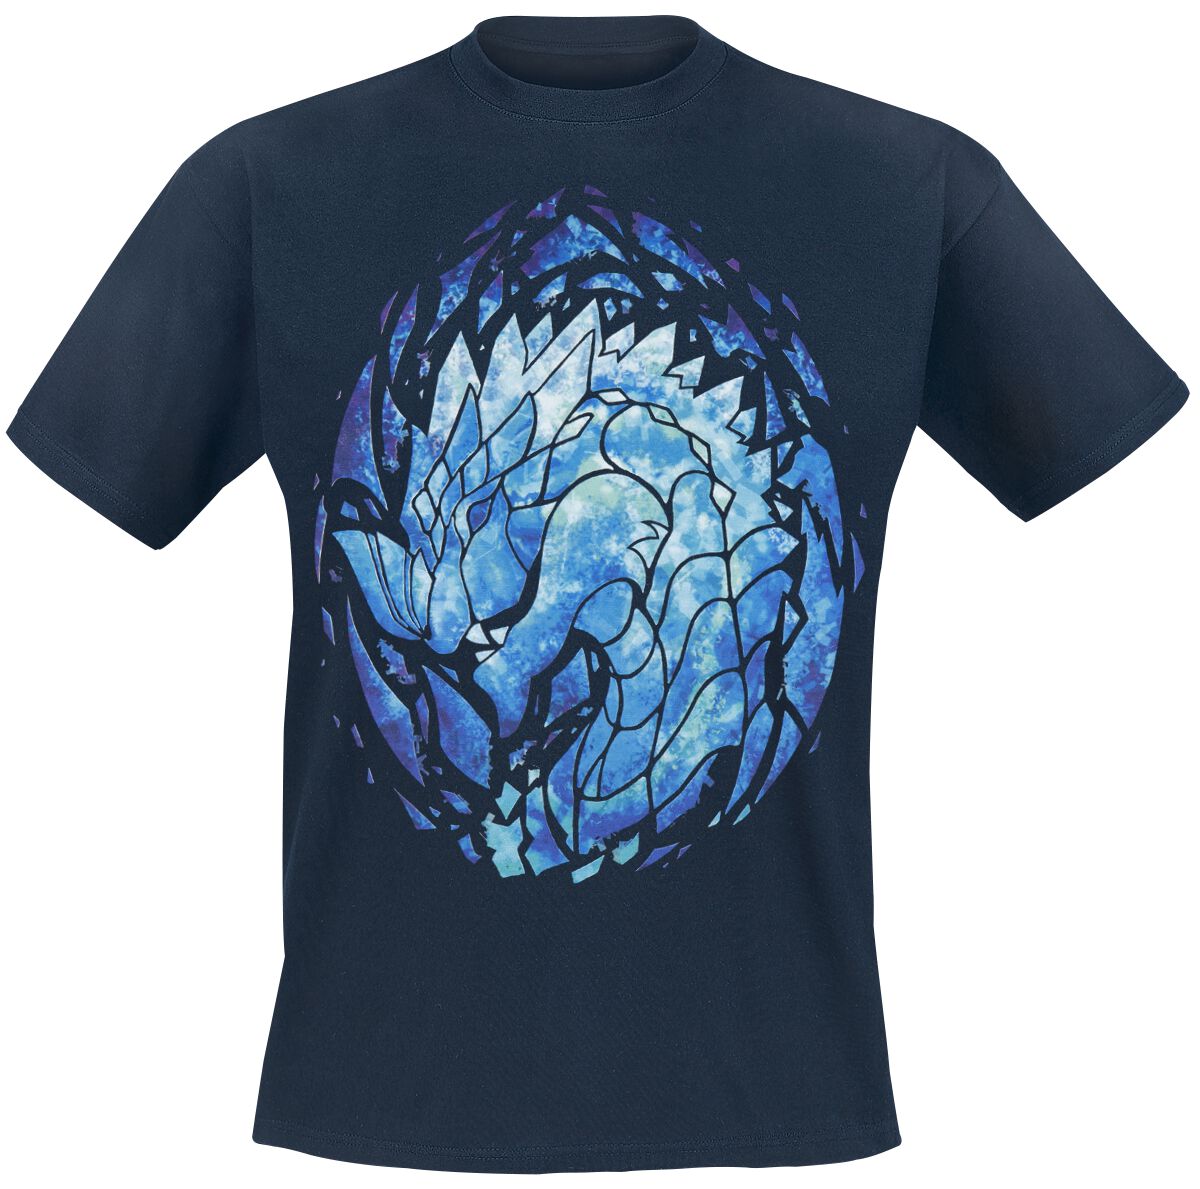 Guild Wars - Gaming T-Shirt - Her Name Is Aurene by Buttersphere - S bis M - für Männer - Größe M - dunkelblau  - EMP exklusives Merchandise!